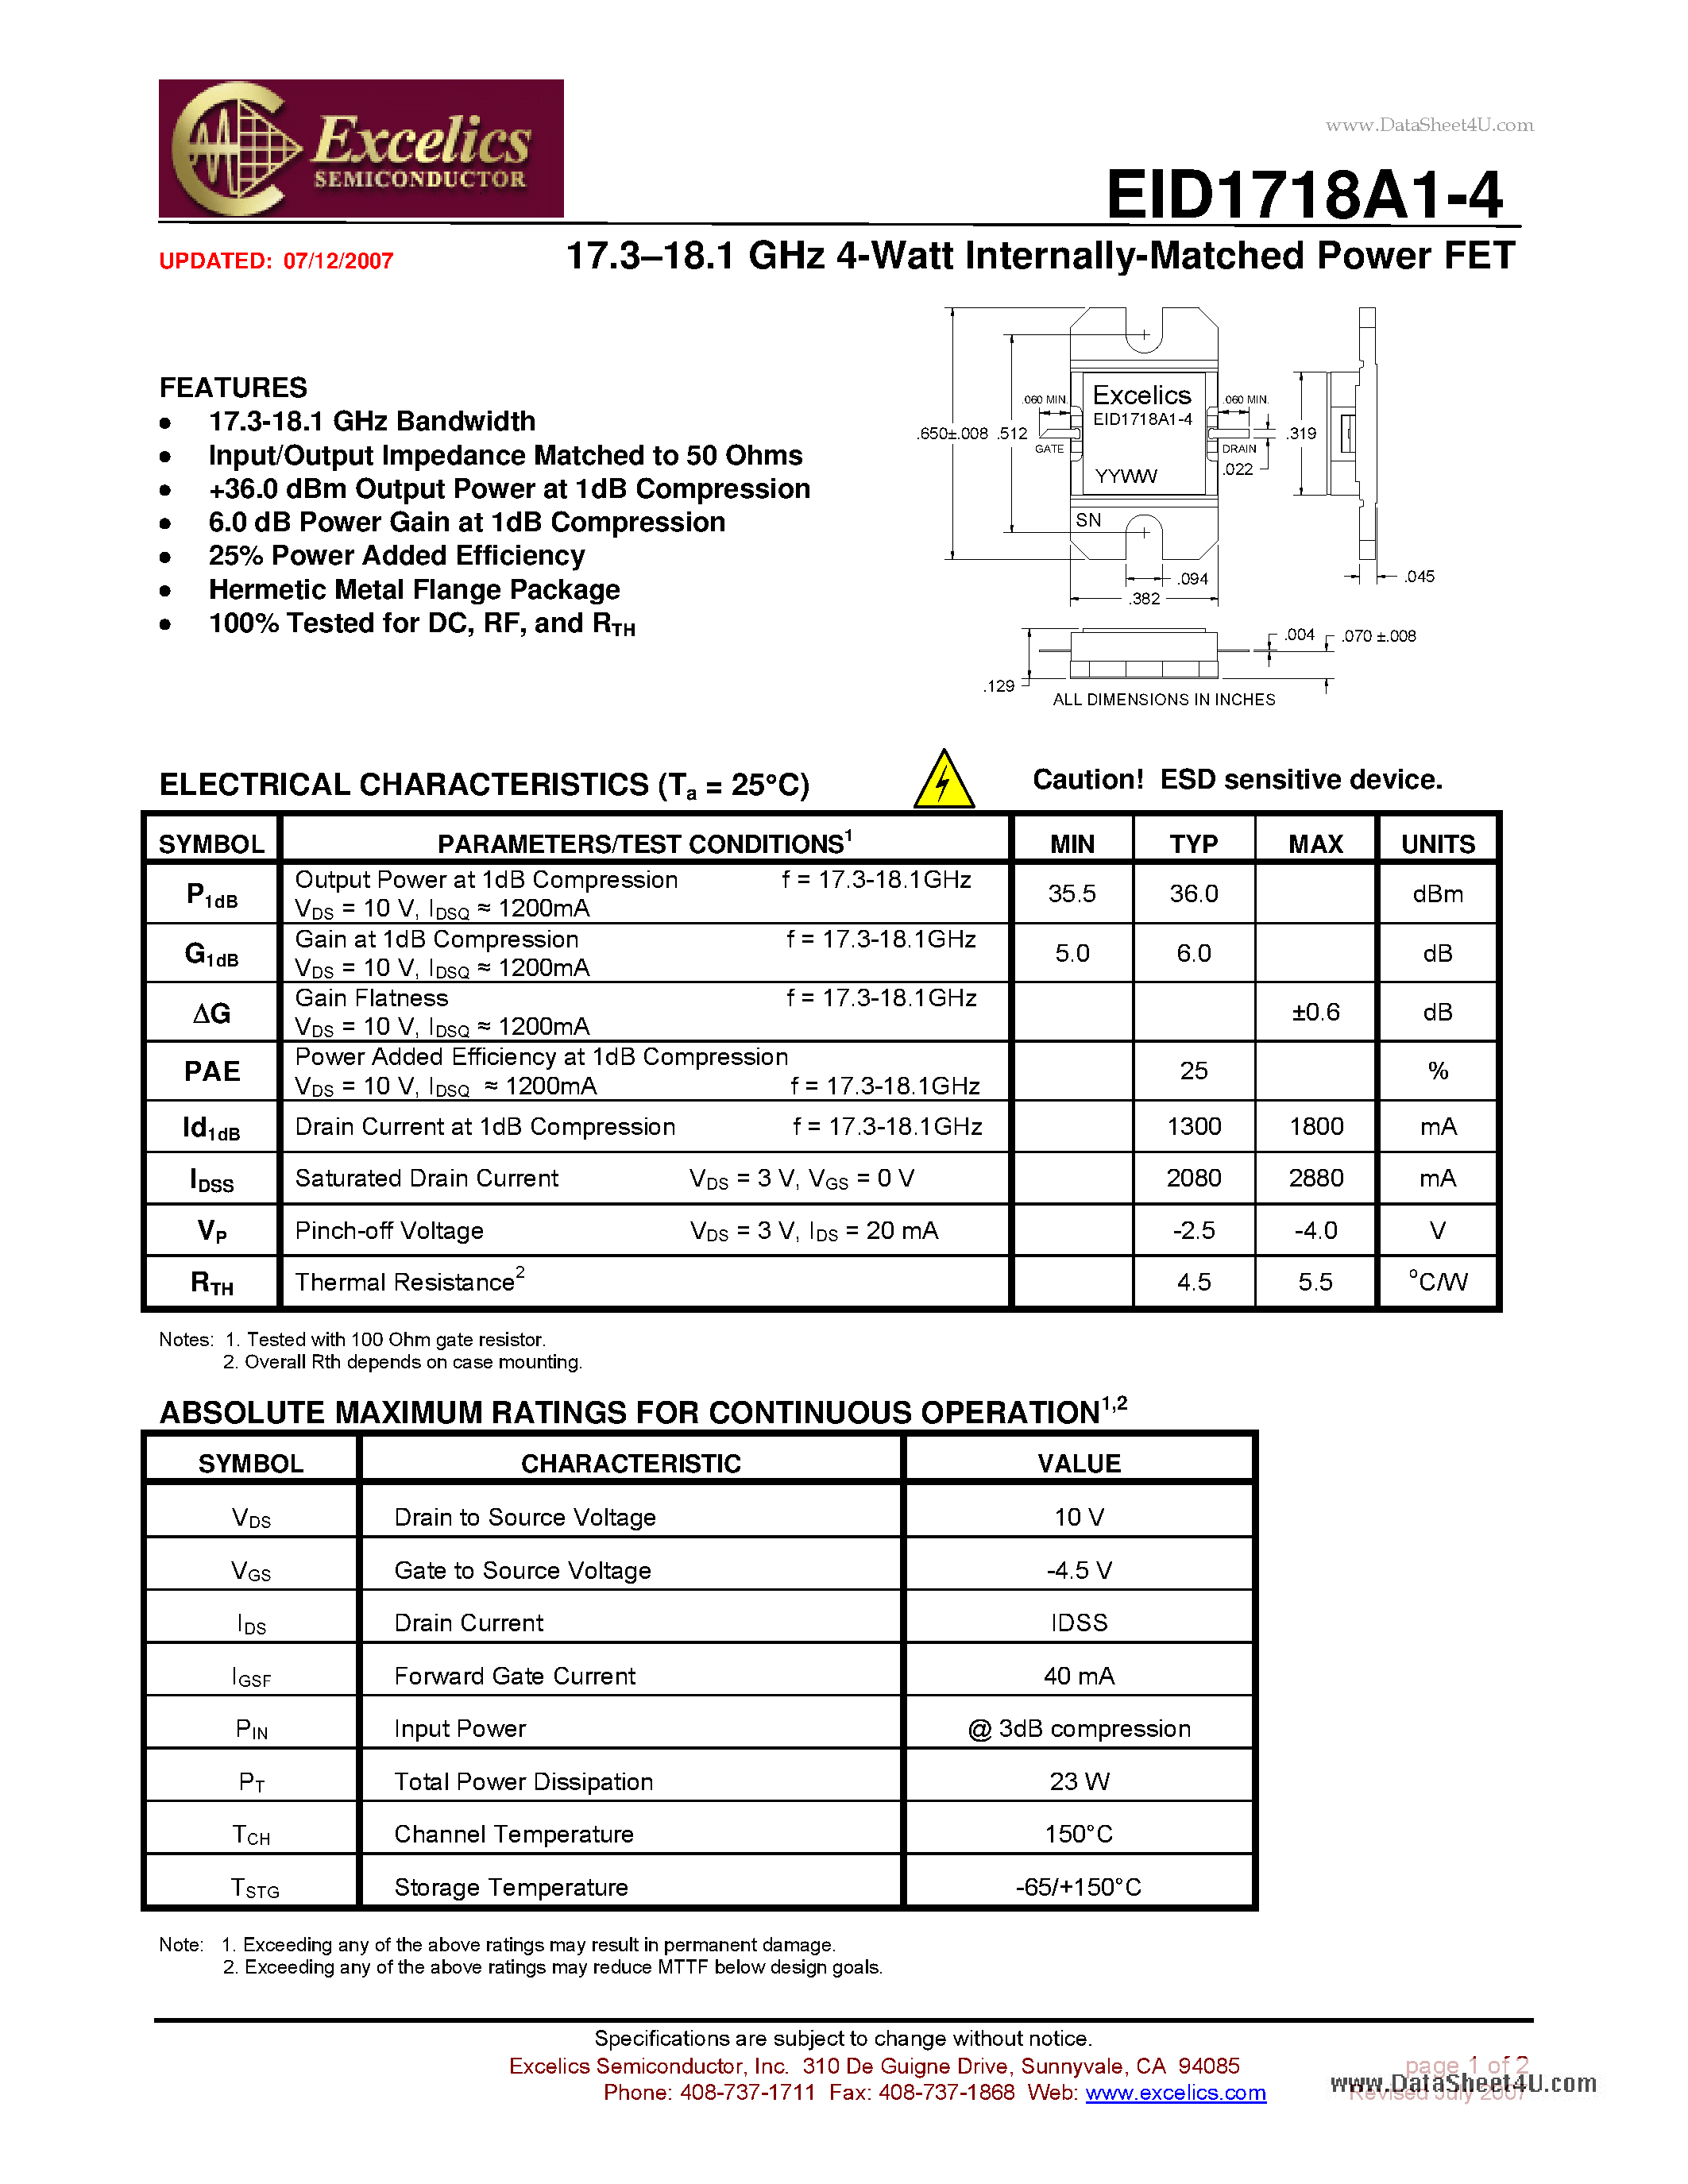 Даташит EID1718A1-4 - 17.3-18.1 GHz 4-Watt Internally-Matched Power FET страница 1